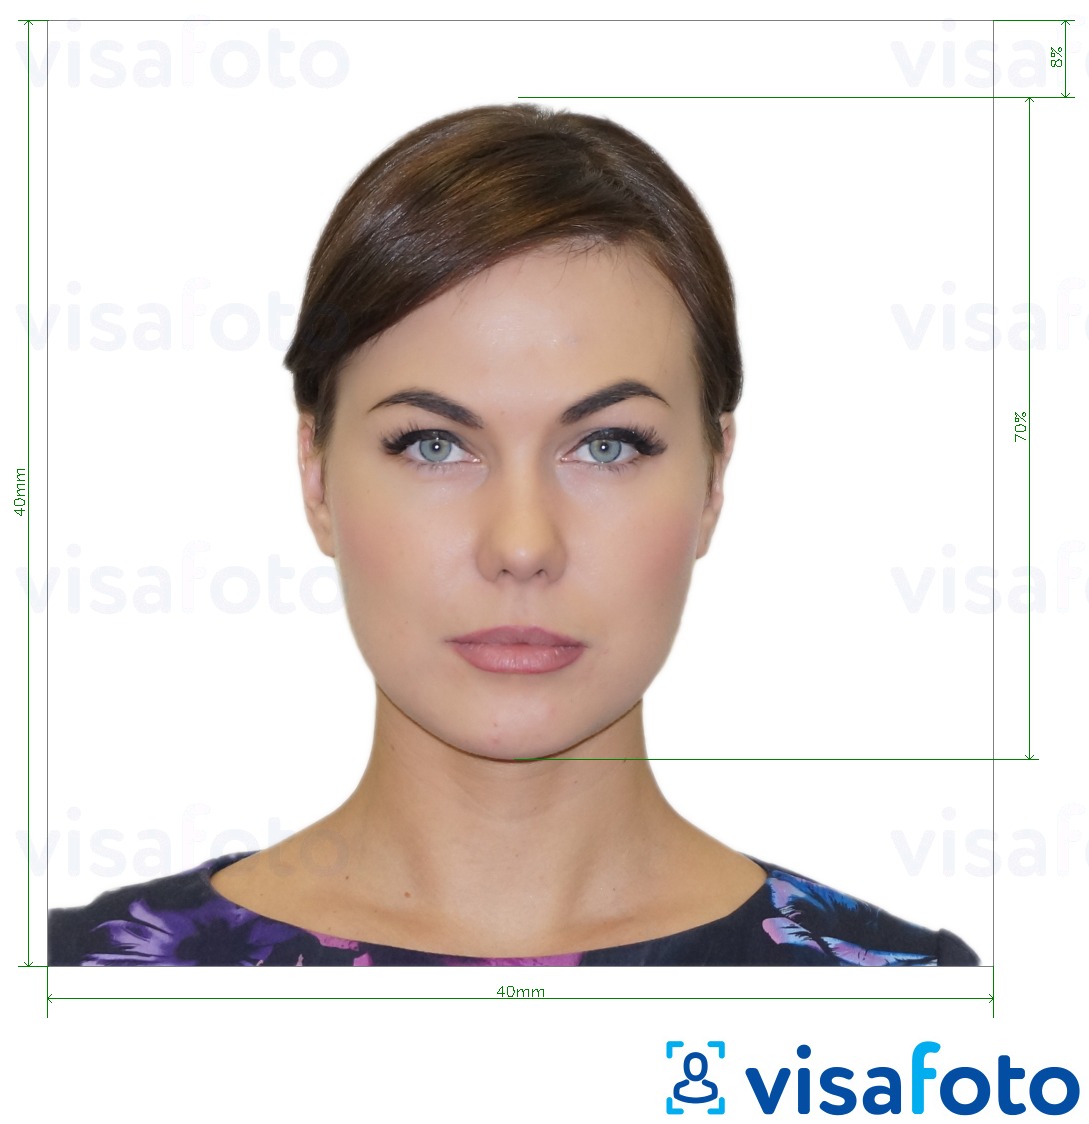 Voorbeeld van foto voor Argentijns paspoort 4x4 cm (40x40 mm) met exacte maatspecificatie